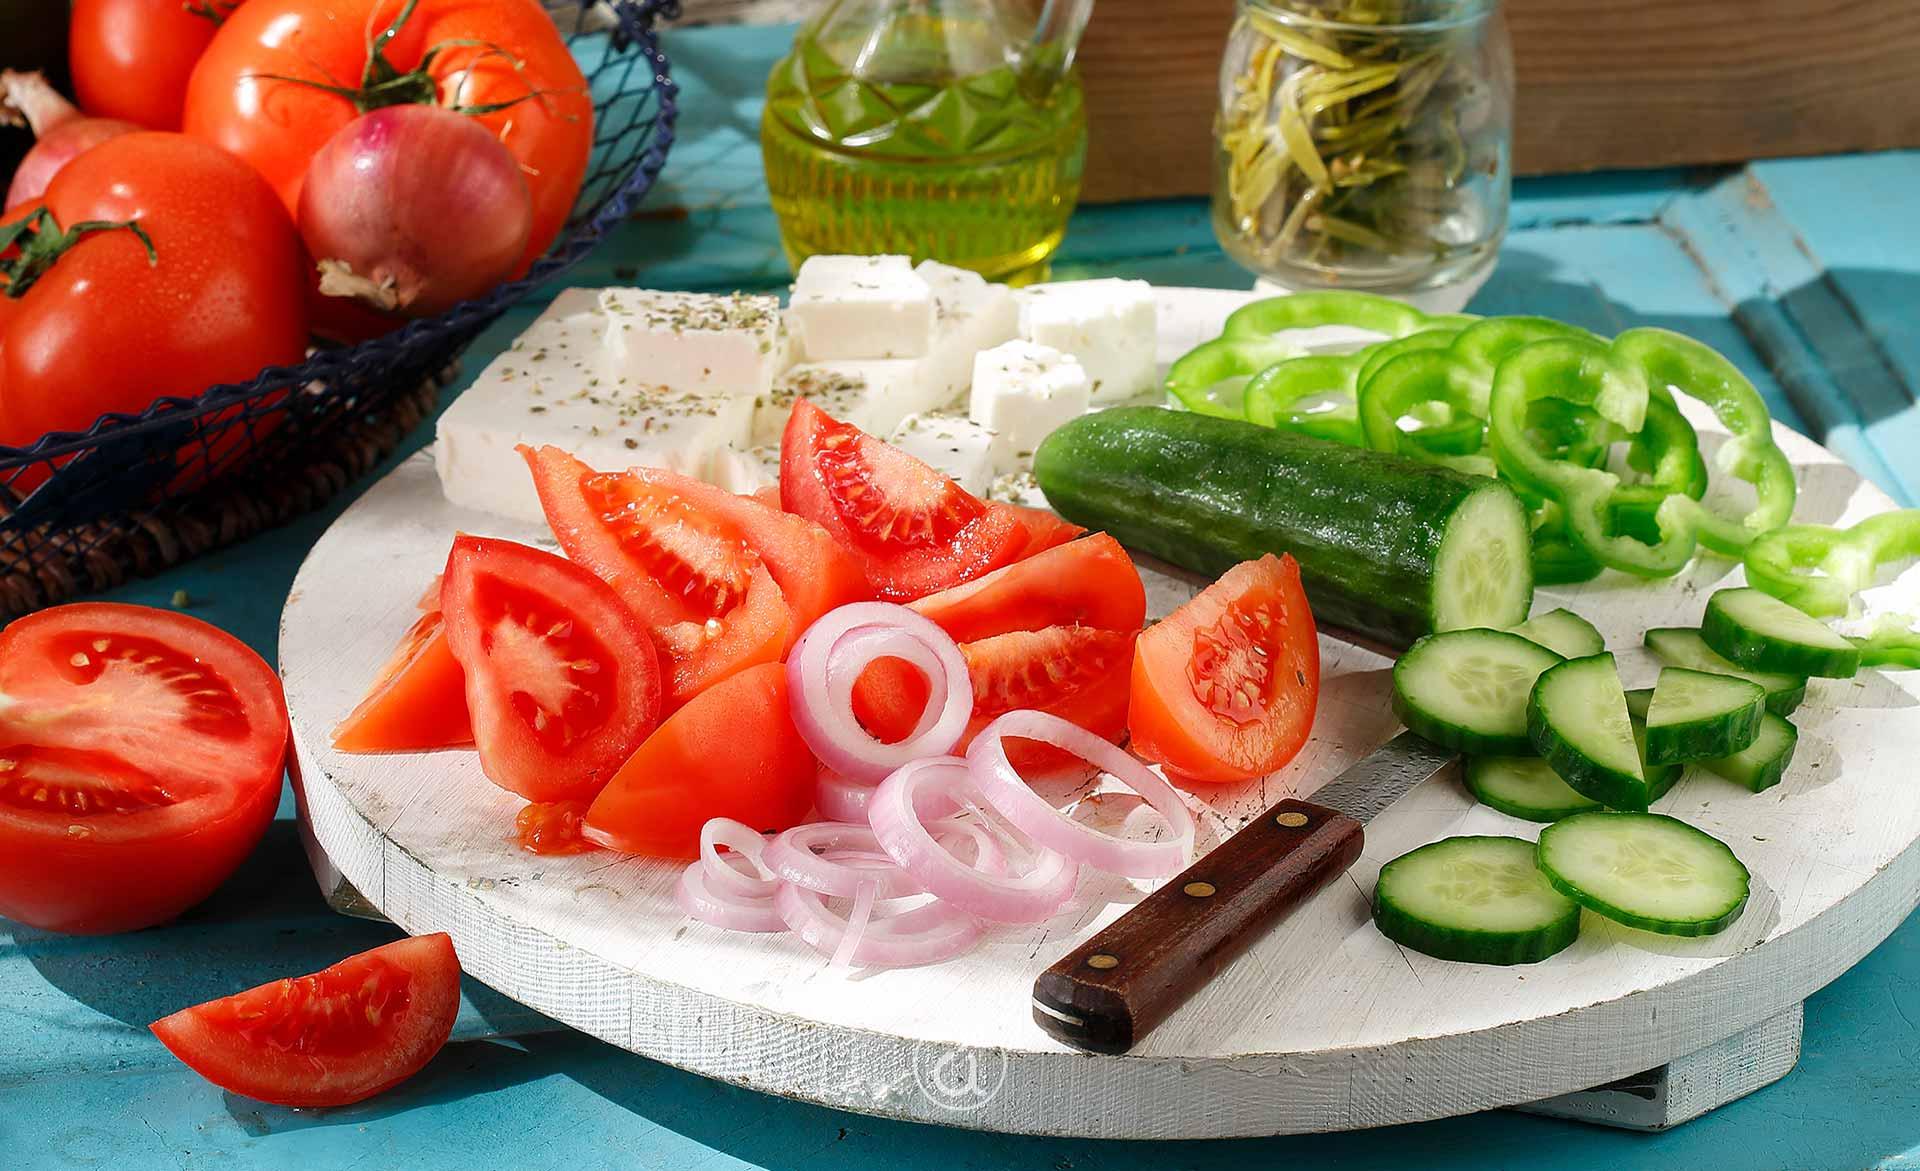 χωριάτικη σαλάτα - greek salad